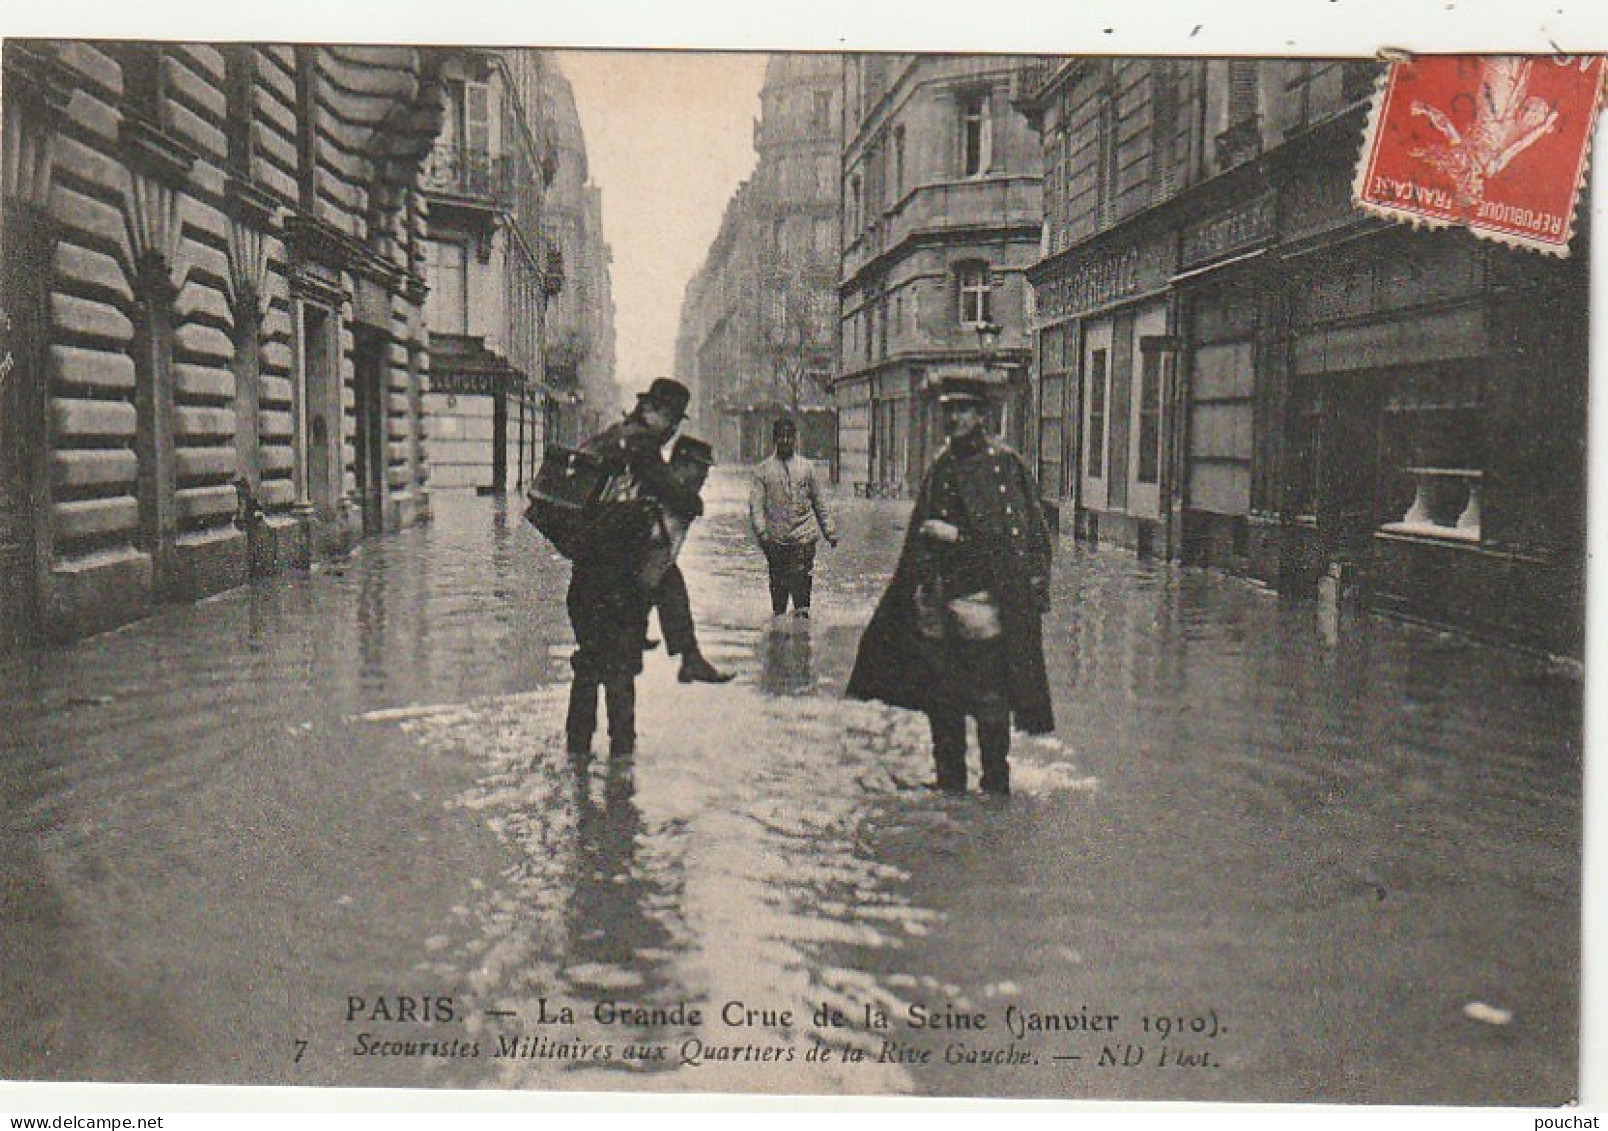 Z++ 3-(75) PARIS - LA GRANDE CRUE DE LA SEINE ( JANVIER 1910 ) - SECOURISTES MILITAIRES AUX QUARTIERS DE LA RIVE GAUCHE - Inondations De 1910